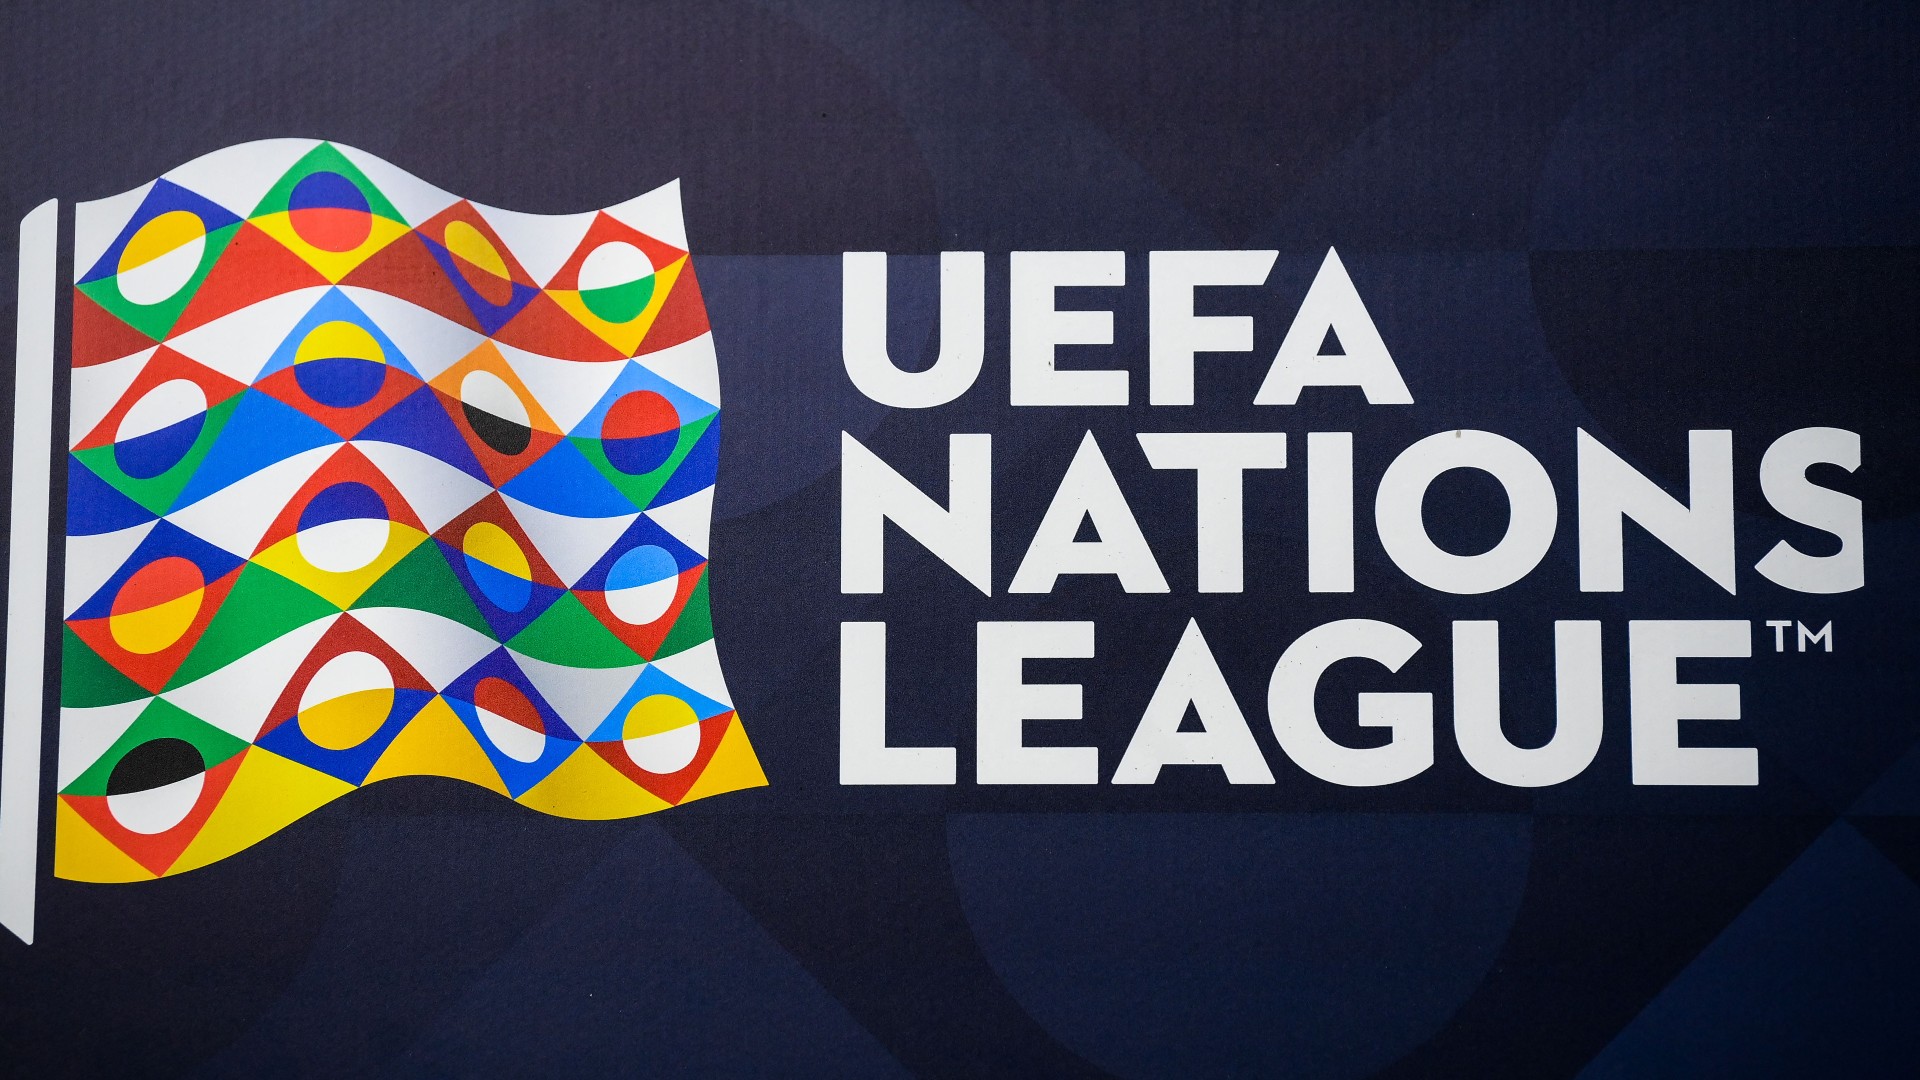 K. Makedonya ve Türkiye’nin UEFA Uluslar Ligi’ndeki rakipleri belli oldu